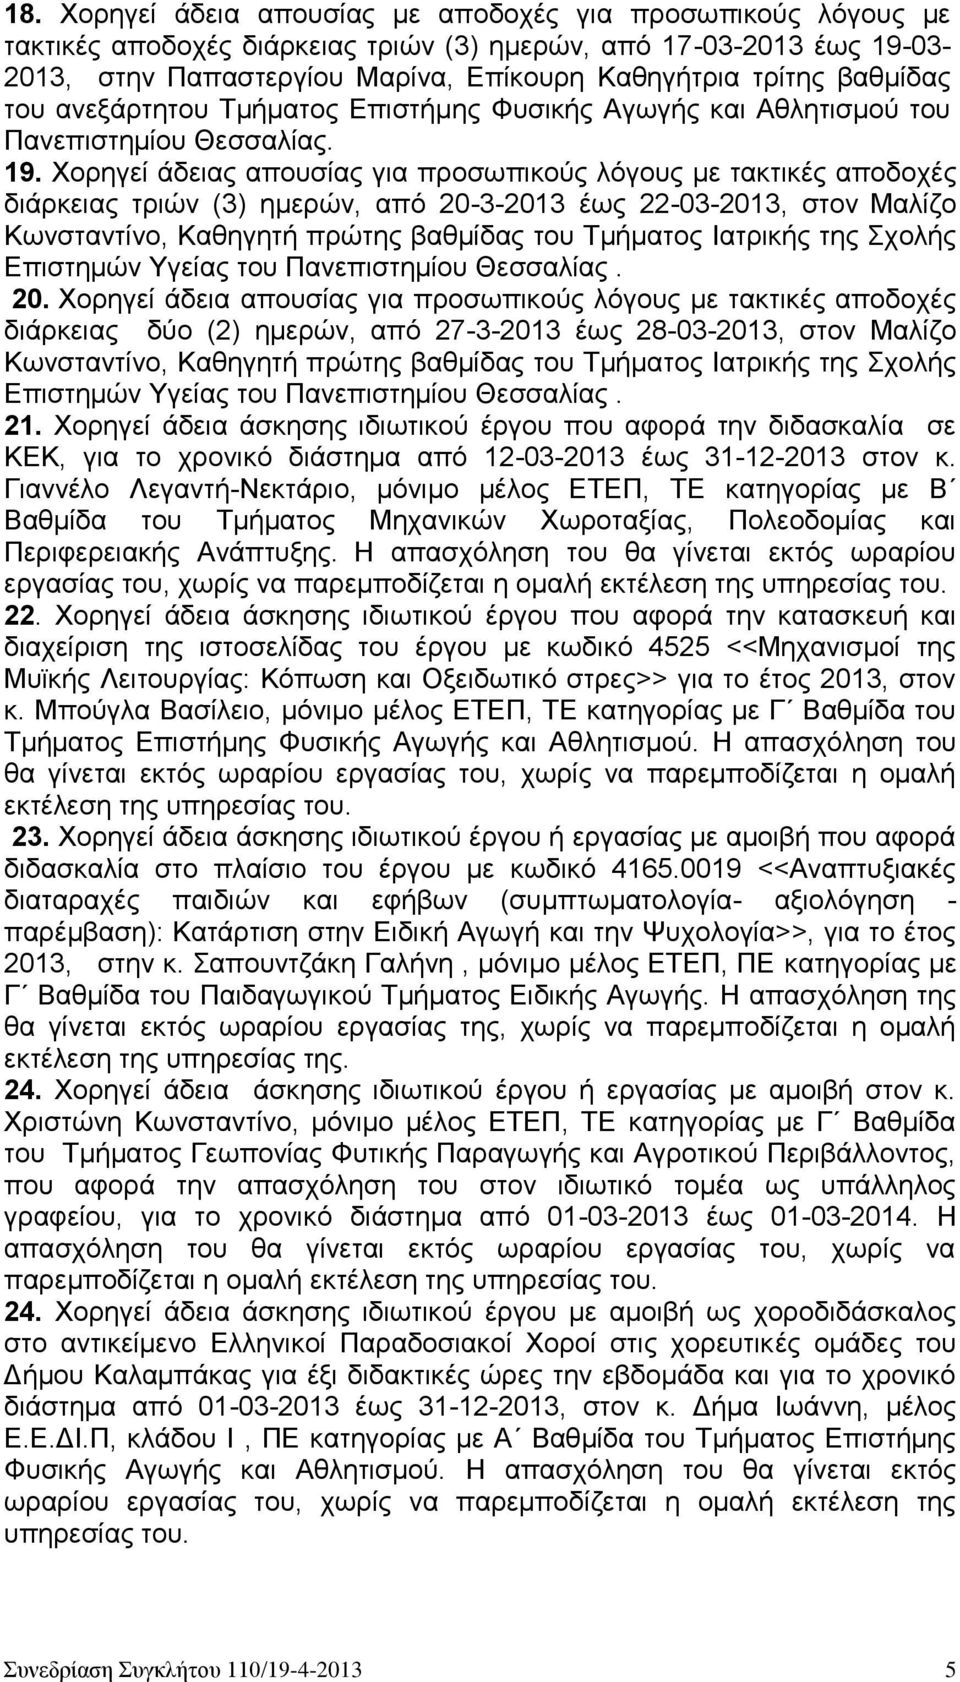 Χορηγεί άδειας απουσίας για προσωπικούς λόγους με τακτικές αποδοχές διάρκειας τριών (3) ημερών, από 20-3-2013 έως 22-03-2013, στον Μαλίζο Κωνσταντίνο, Καθηγητή πρώτης βαθμίδας του Τμήματος Ιατρικής